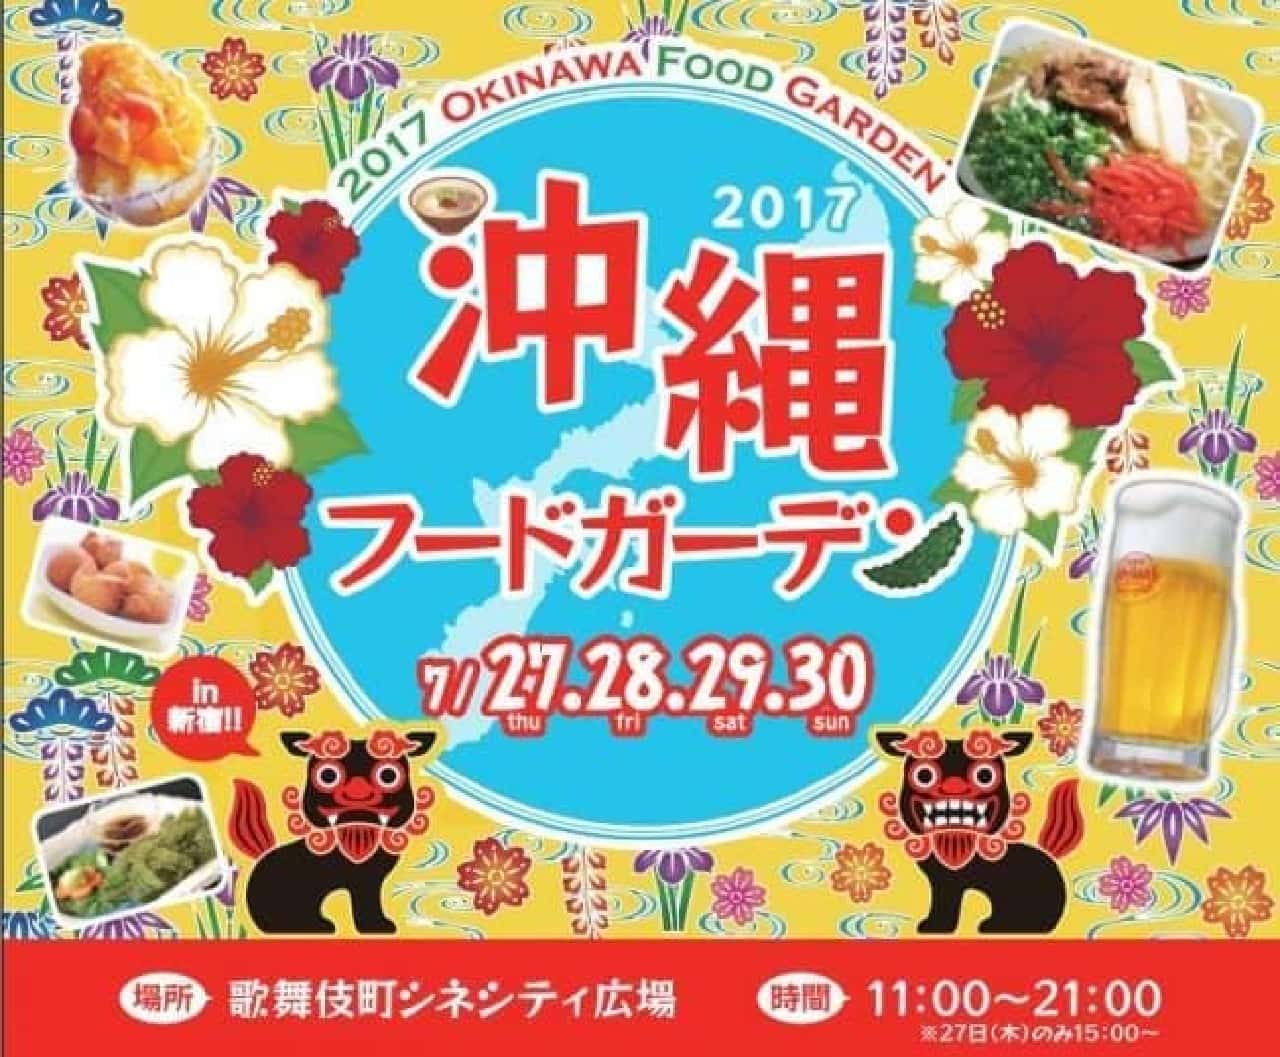 沖縄フードガーデン2017